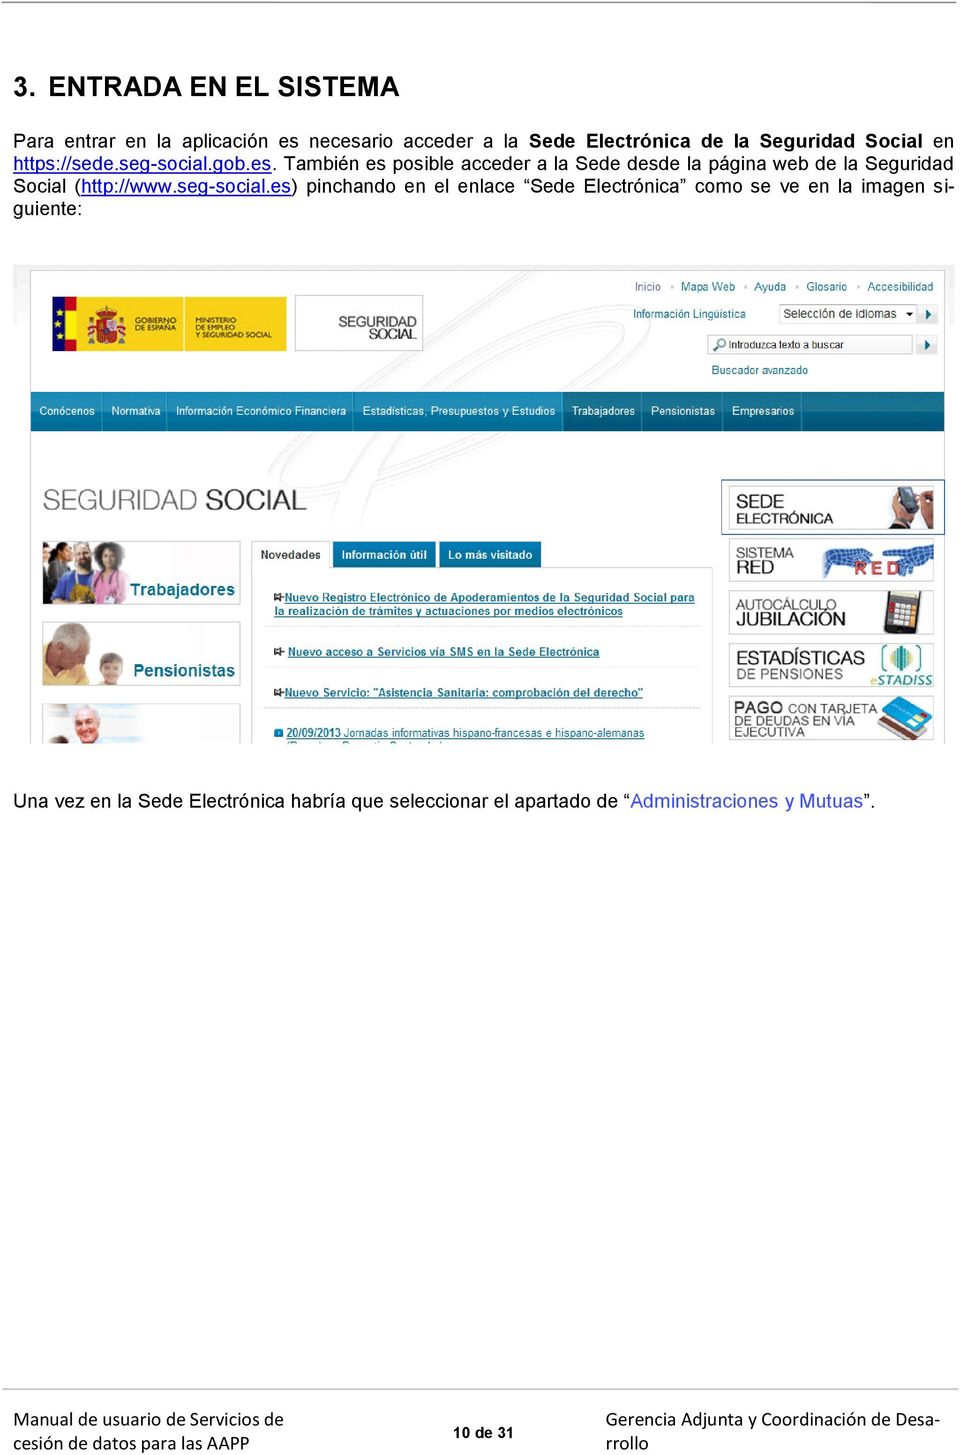 También es posible acceder a la Sede desde la página web de la Seguridad Social (http://www.seg-social.